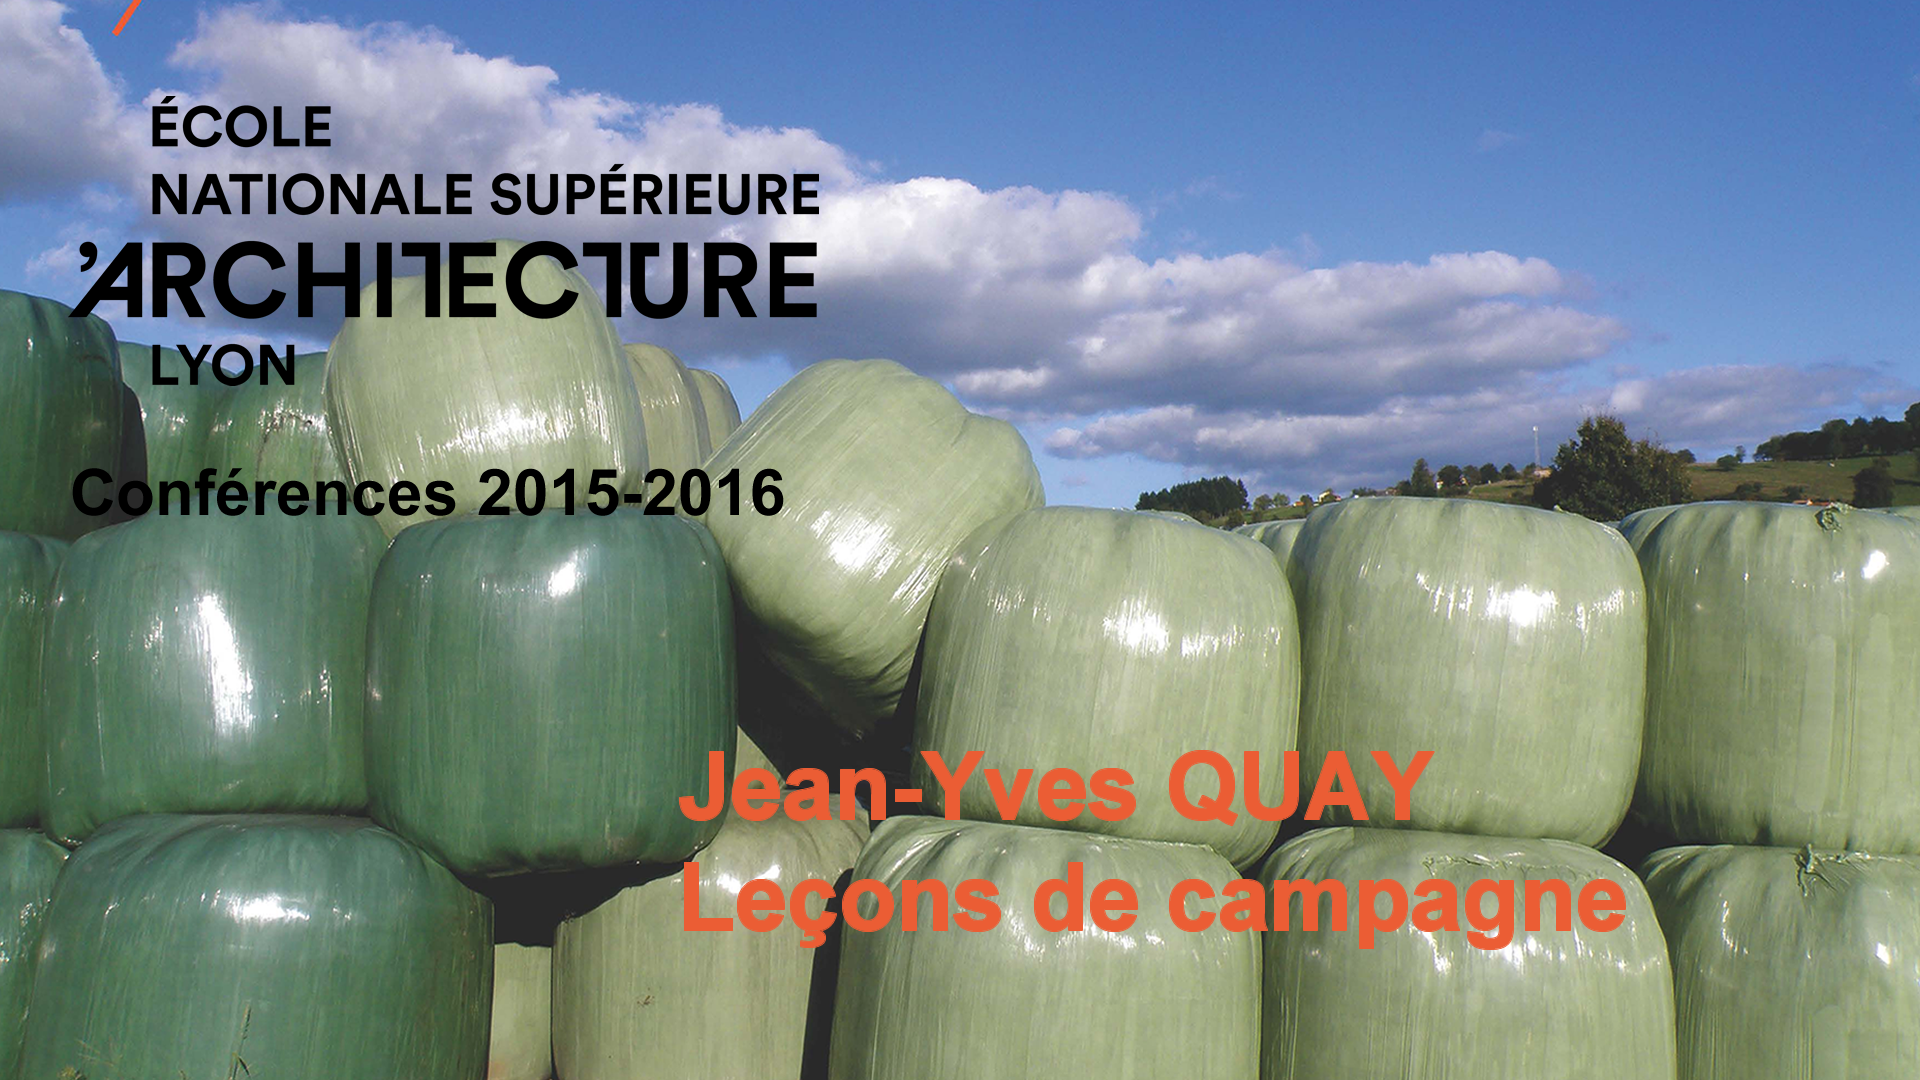 Conférence de Jean-Yves QUAY / Leçons de campagne